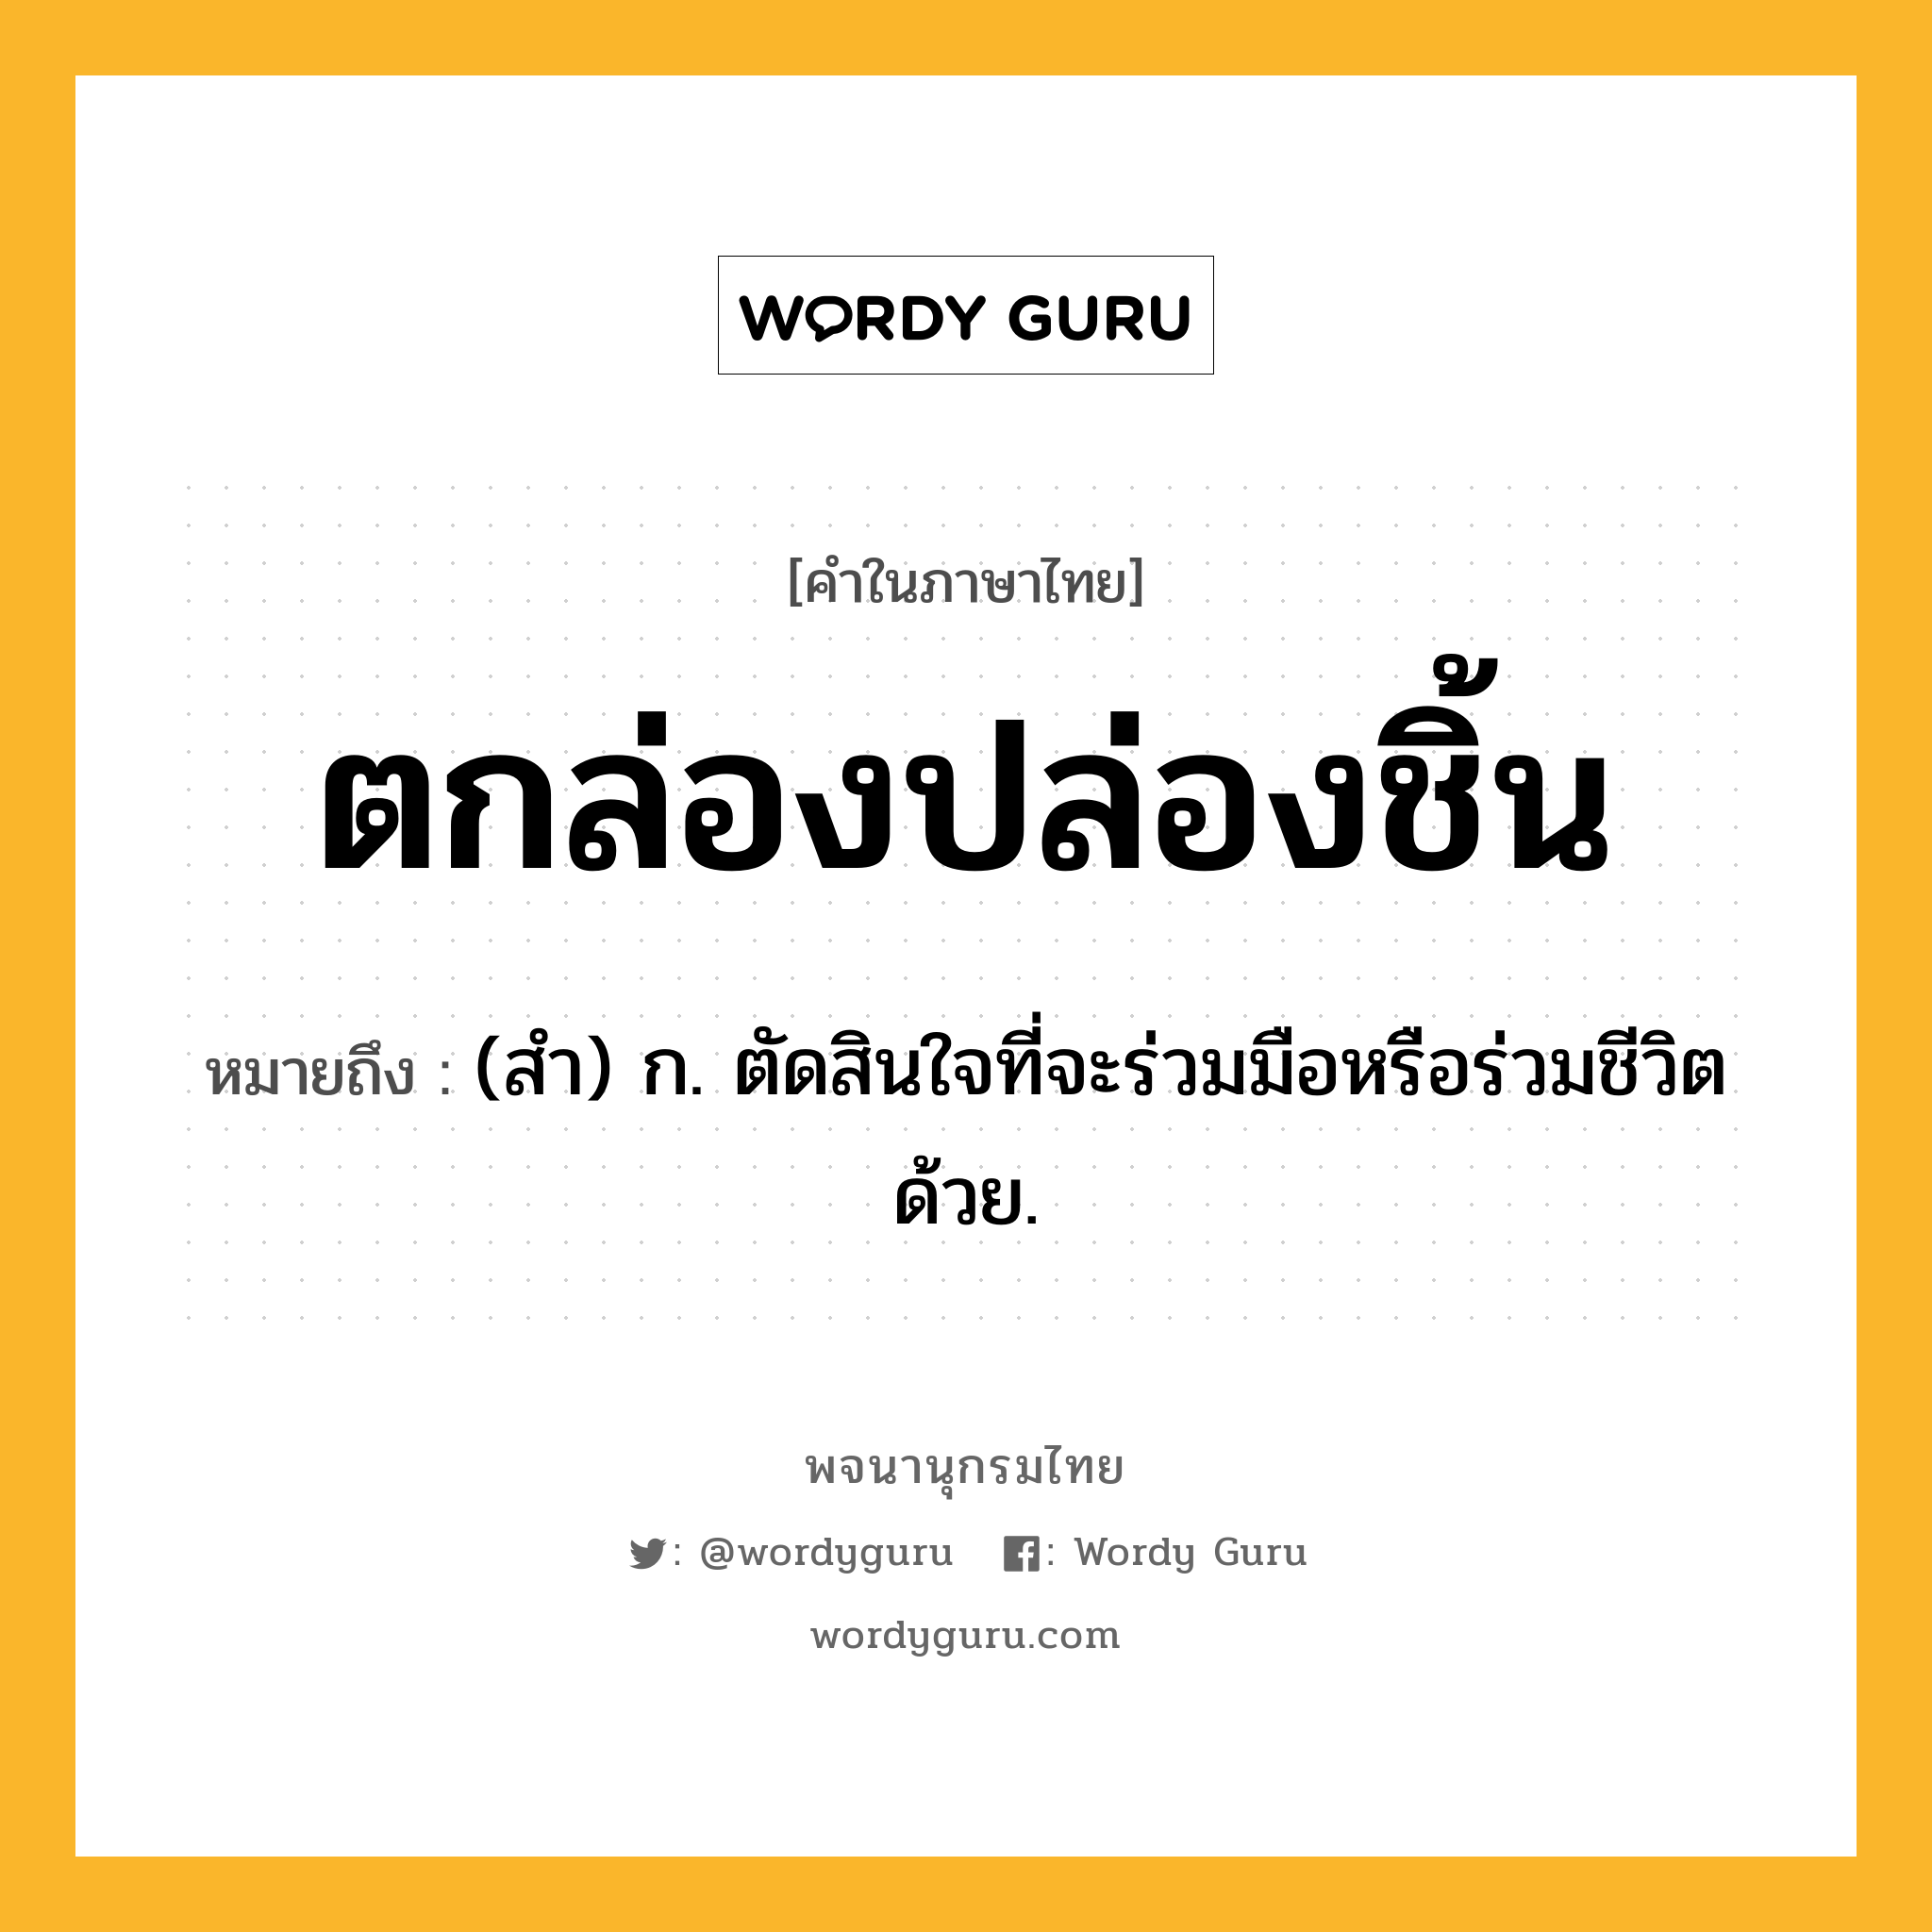 ตกล่องปล่องชิ้น ความหมาย หมายถึงอะไร?, คำในภาษาไทย ตกล่องปล่องชิ้น หมายถึง (สํา) ก. ตัดสินใจที่จะร่วมมือหรือร่วมชีวิตด้วย.